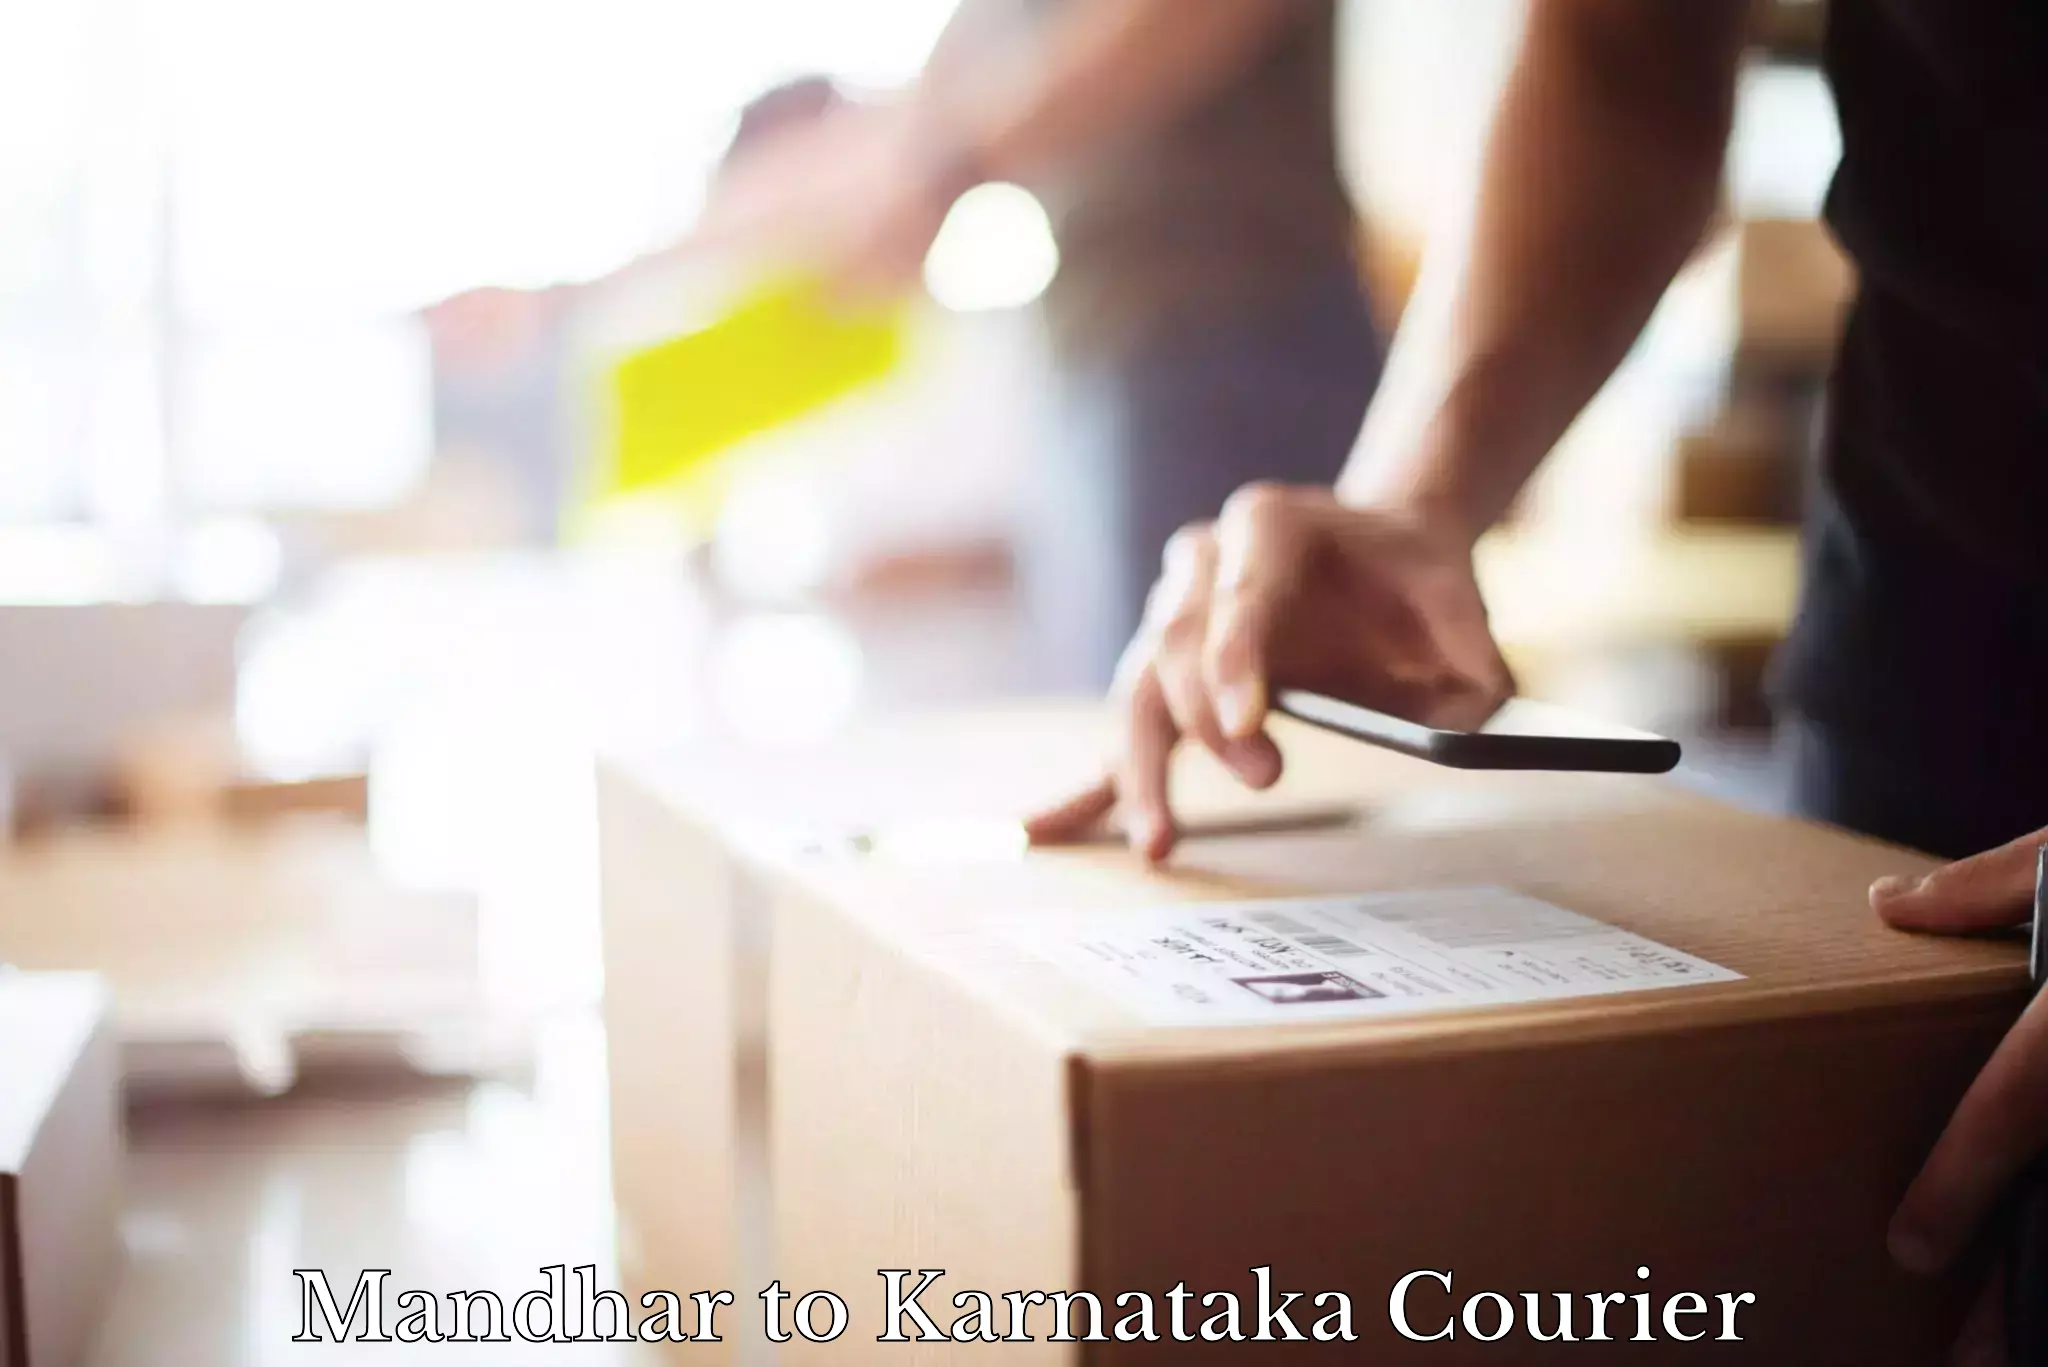 Versatile courier offerings Mandhar to Karnataka